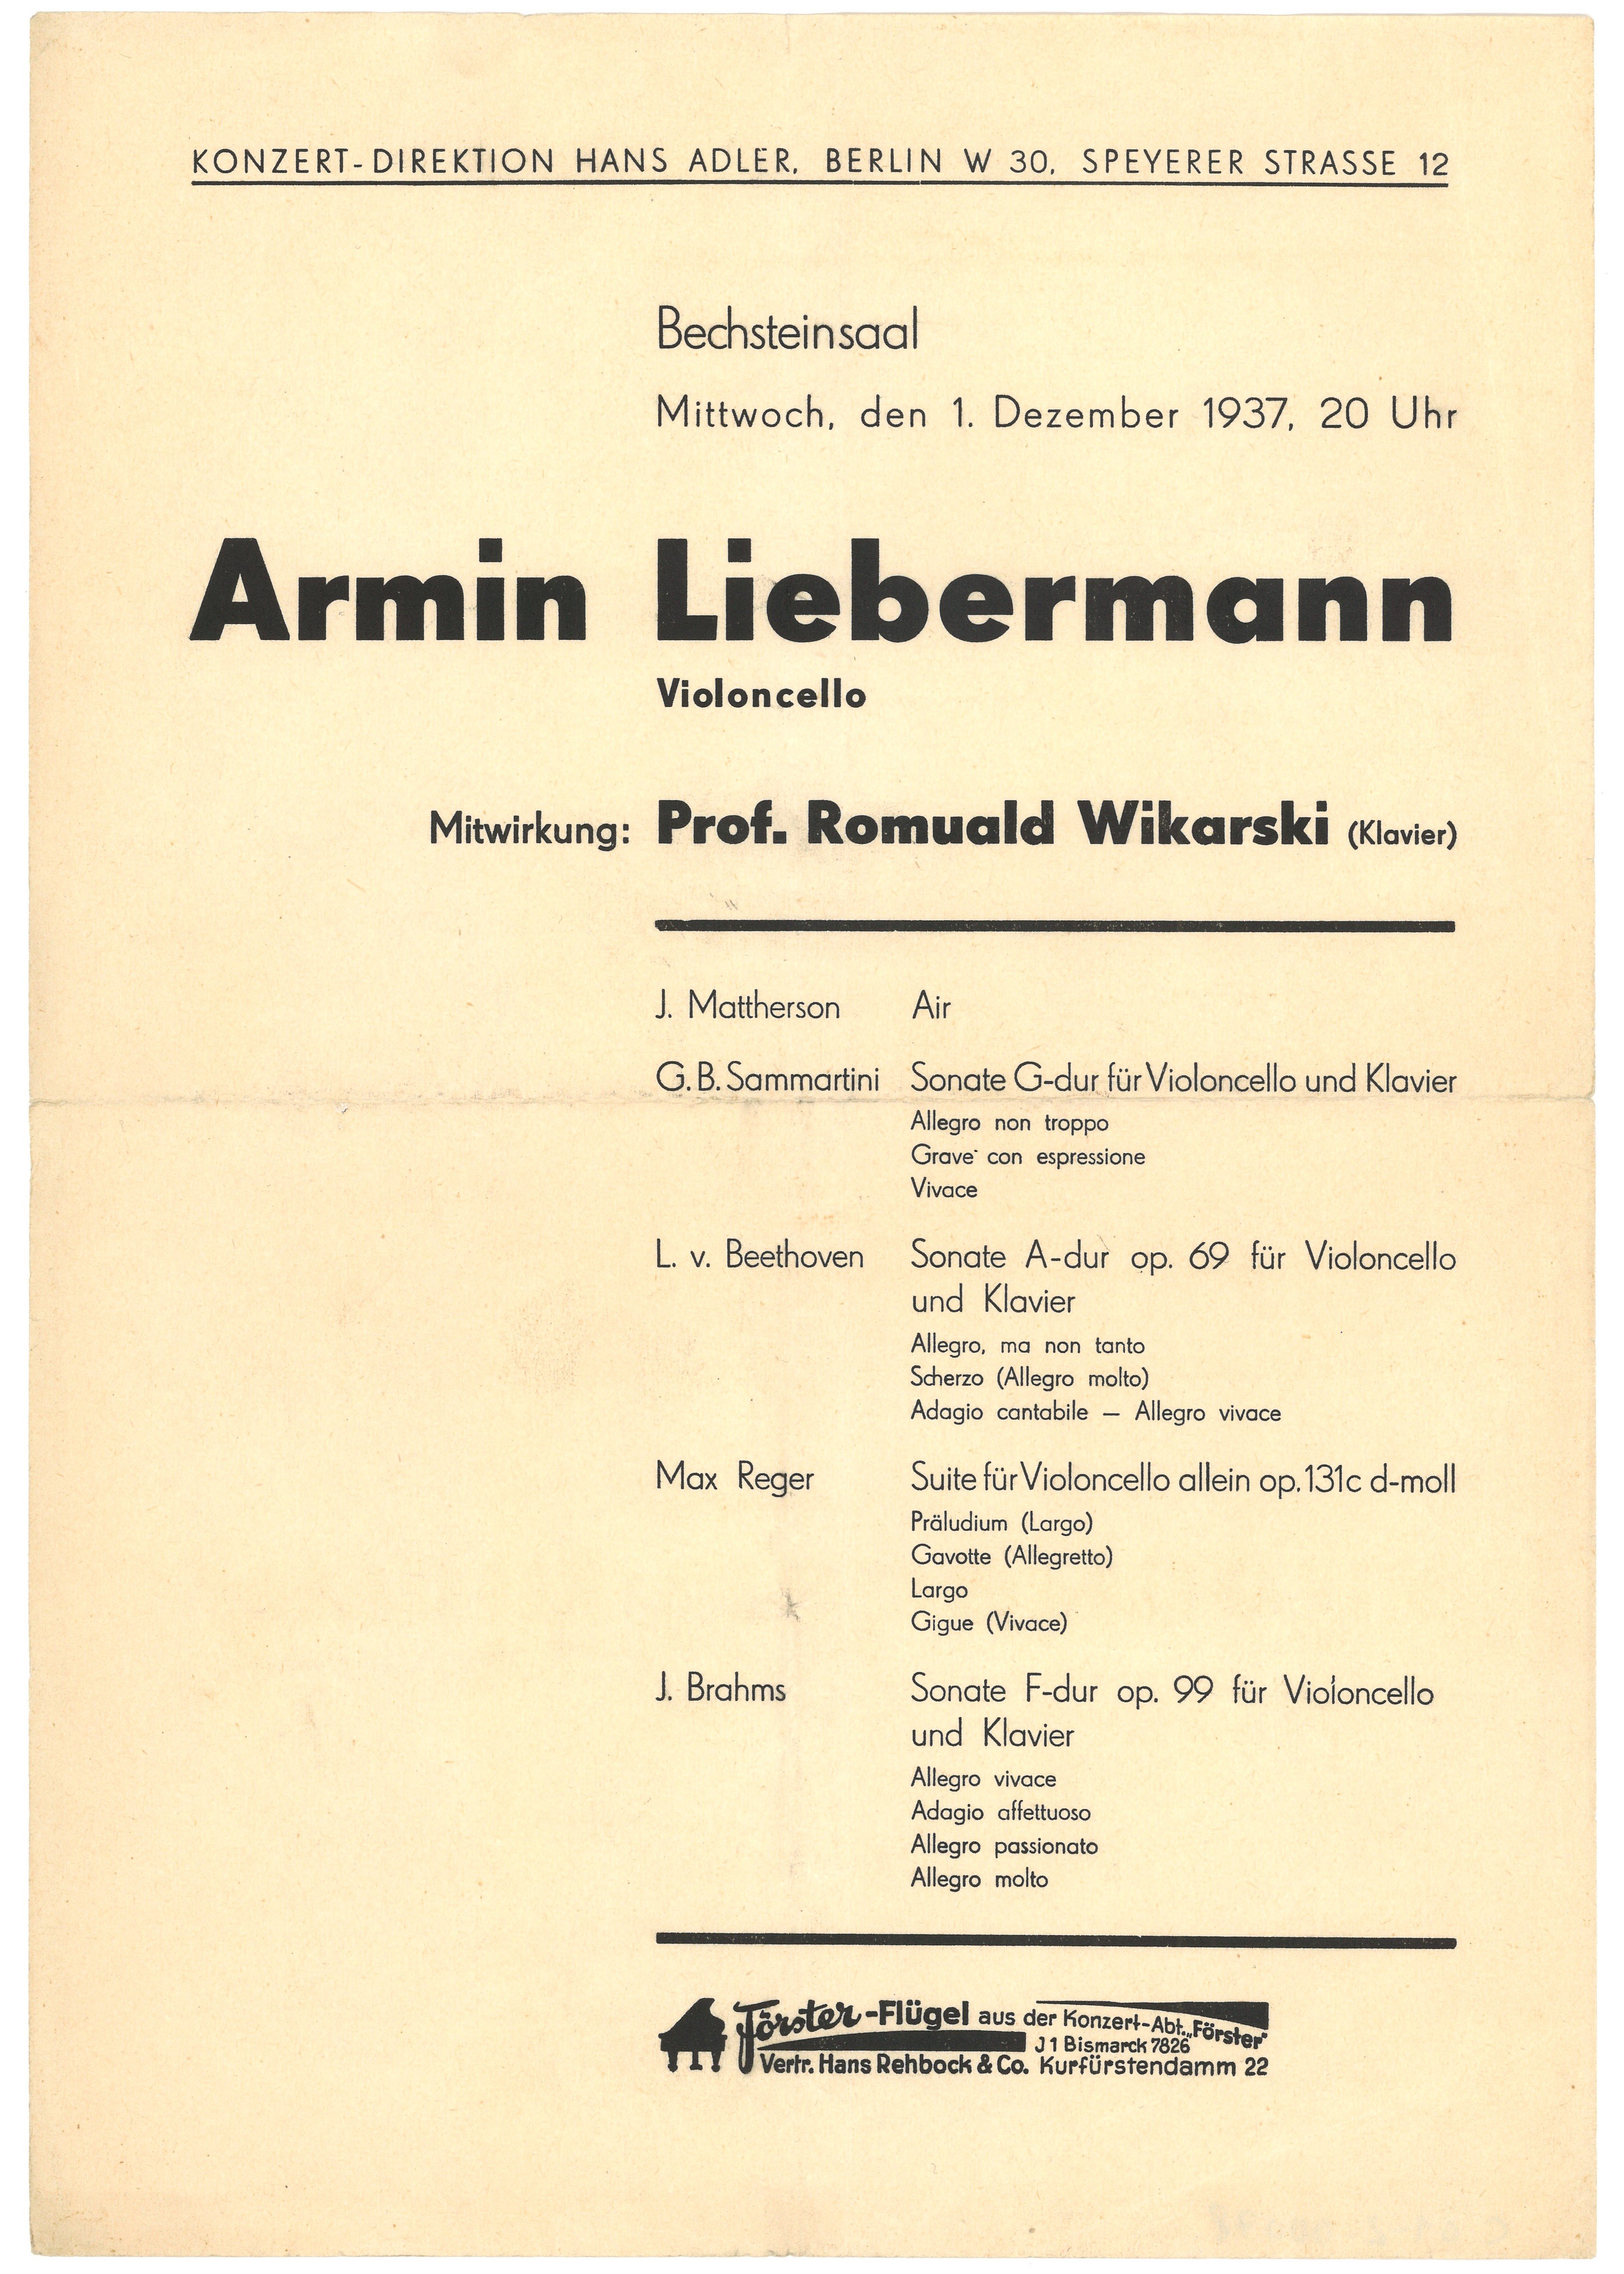 Programm zum Konzert von Armin Liebermann im Bechsteinsaal in Berlin am 1. Dezember 1937 (Landesgeschichtliche Vereinigung für die Mark Brandenburg e.V., Archiv CC BY)